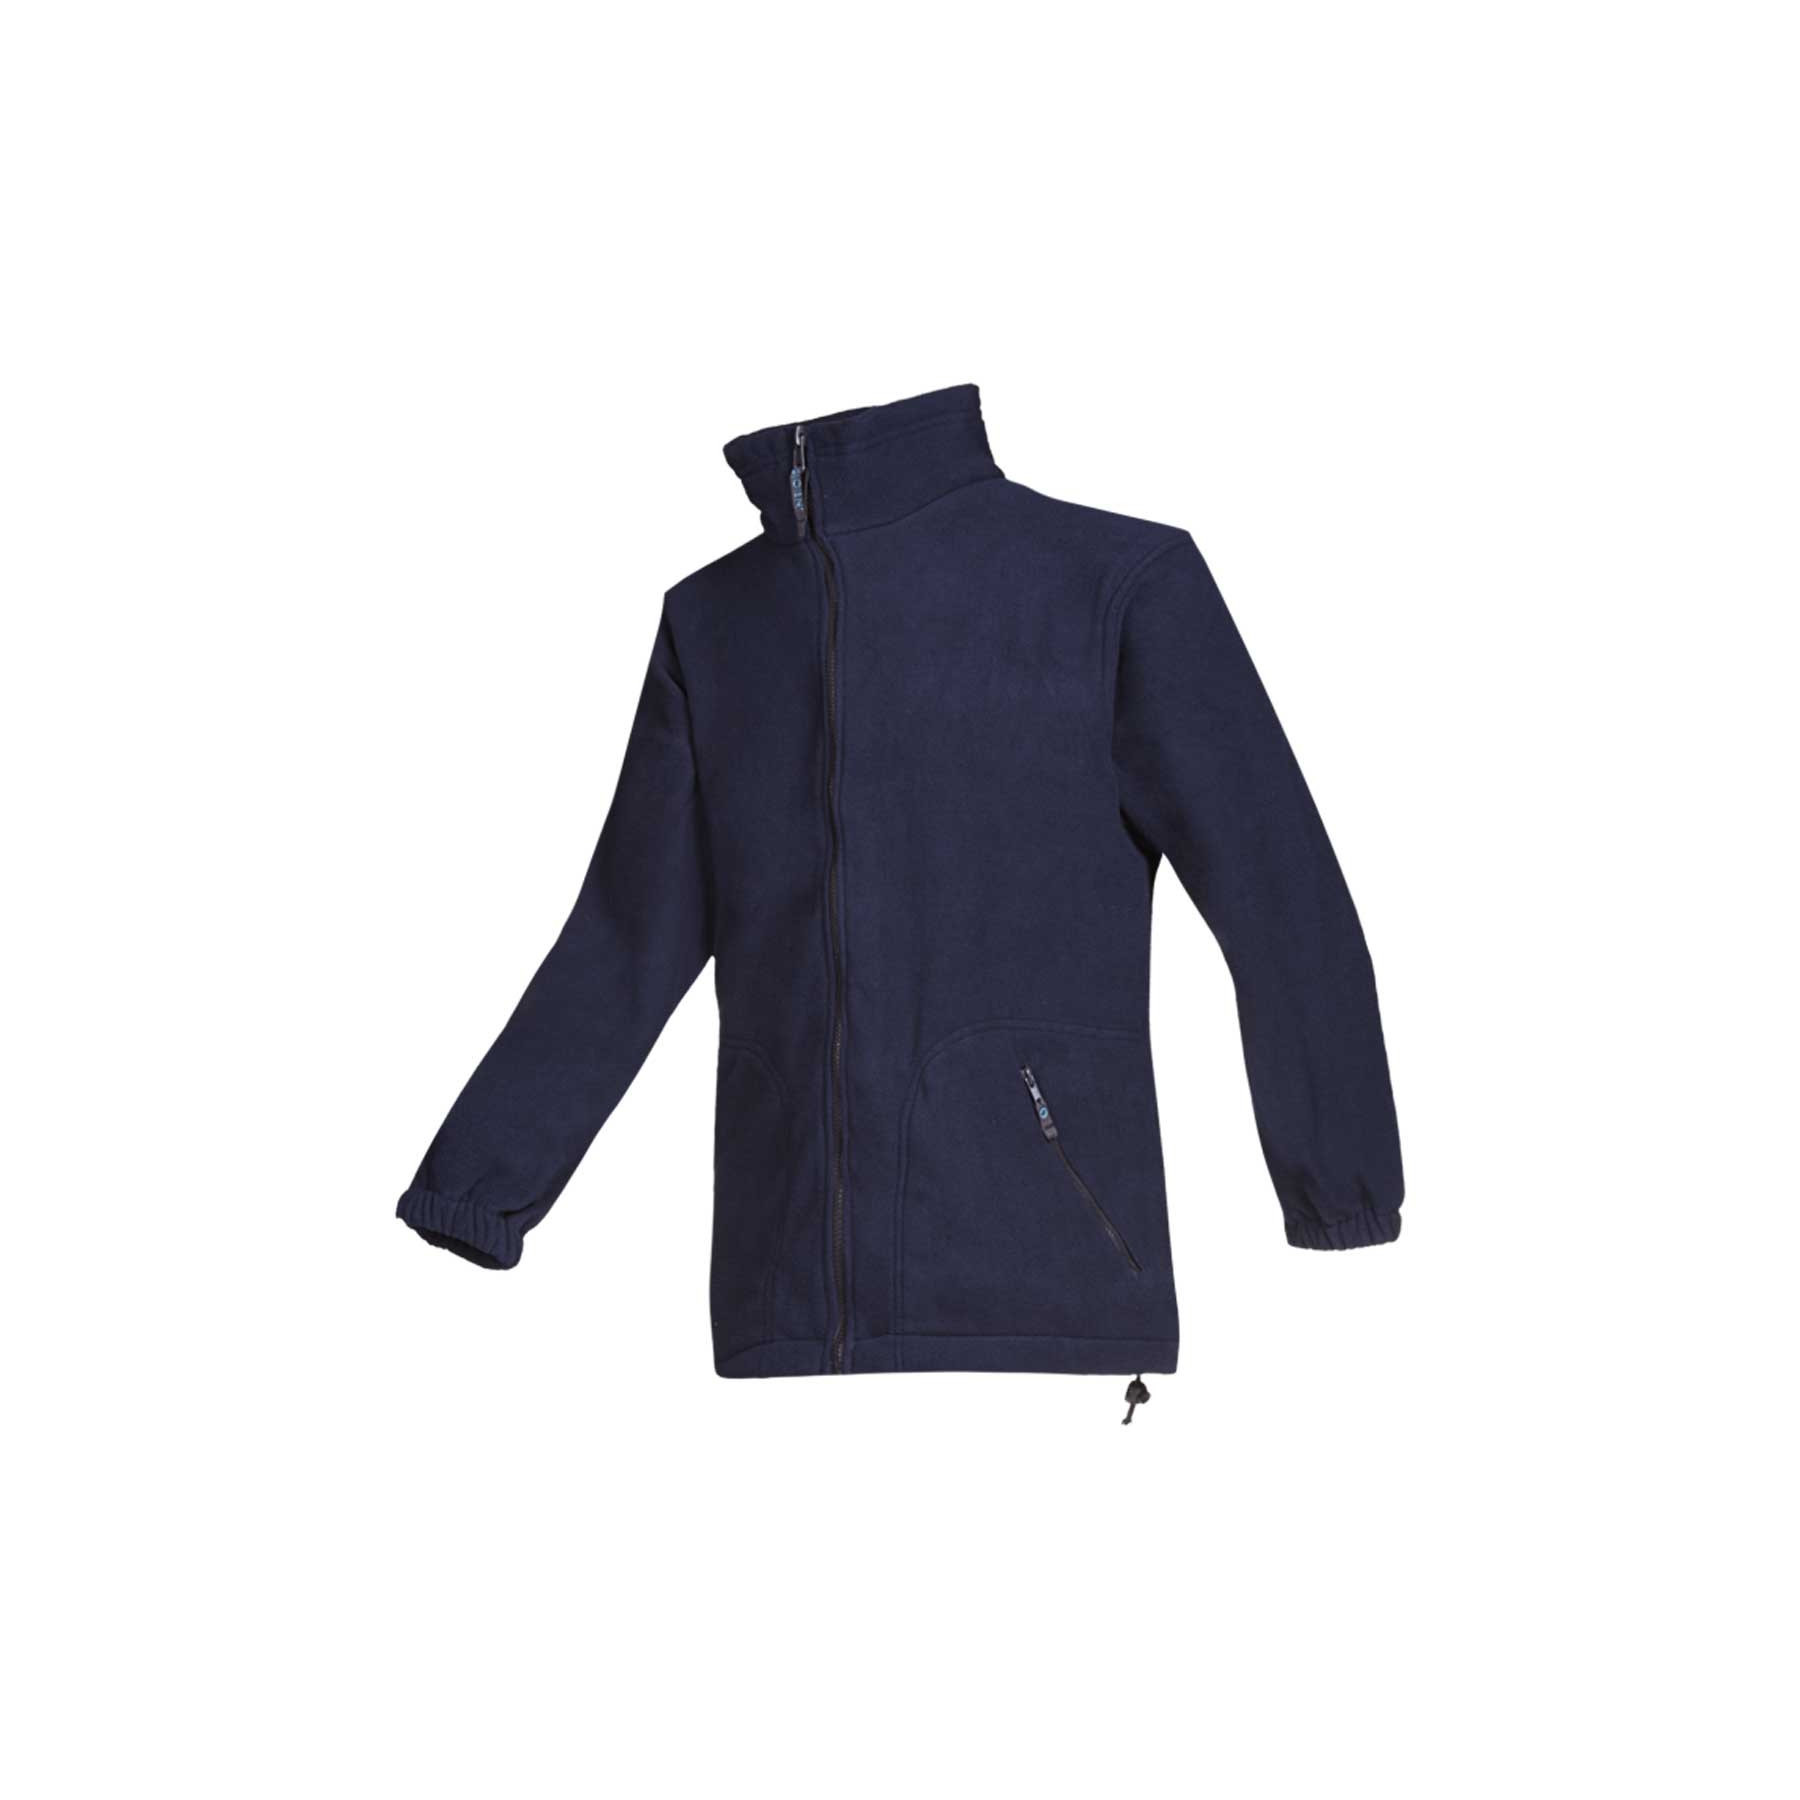 Fleece jacket - Burdis